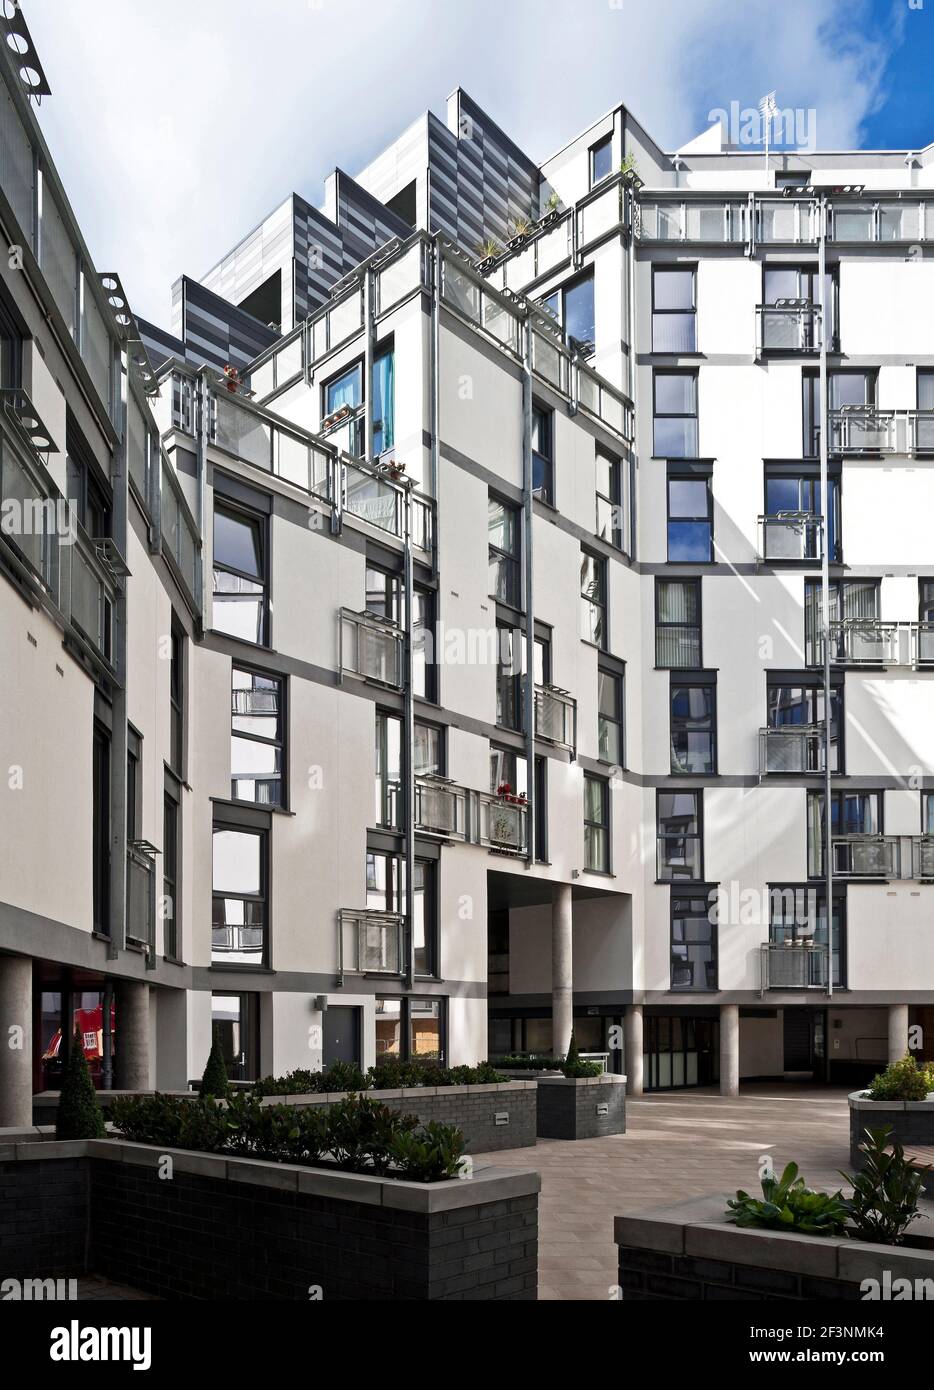 Wharton Square, social Housing avec panneaux horizontaux gris gradués à l'extérieur, agencer dans une forme octogonale autour d'une cour centrale. Banque D'Images